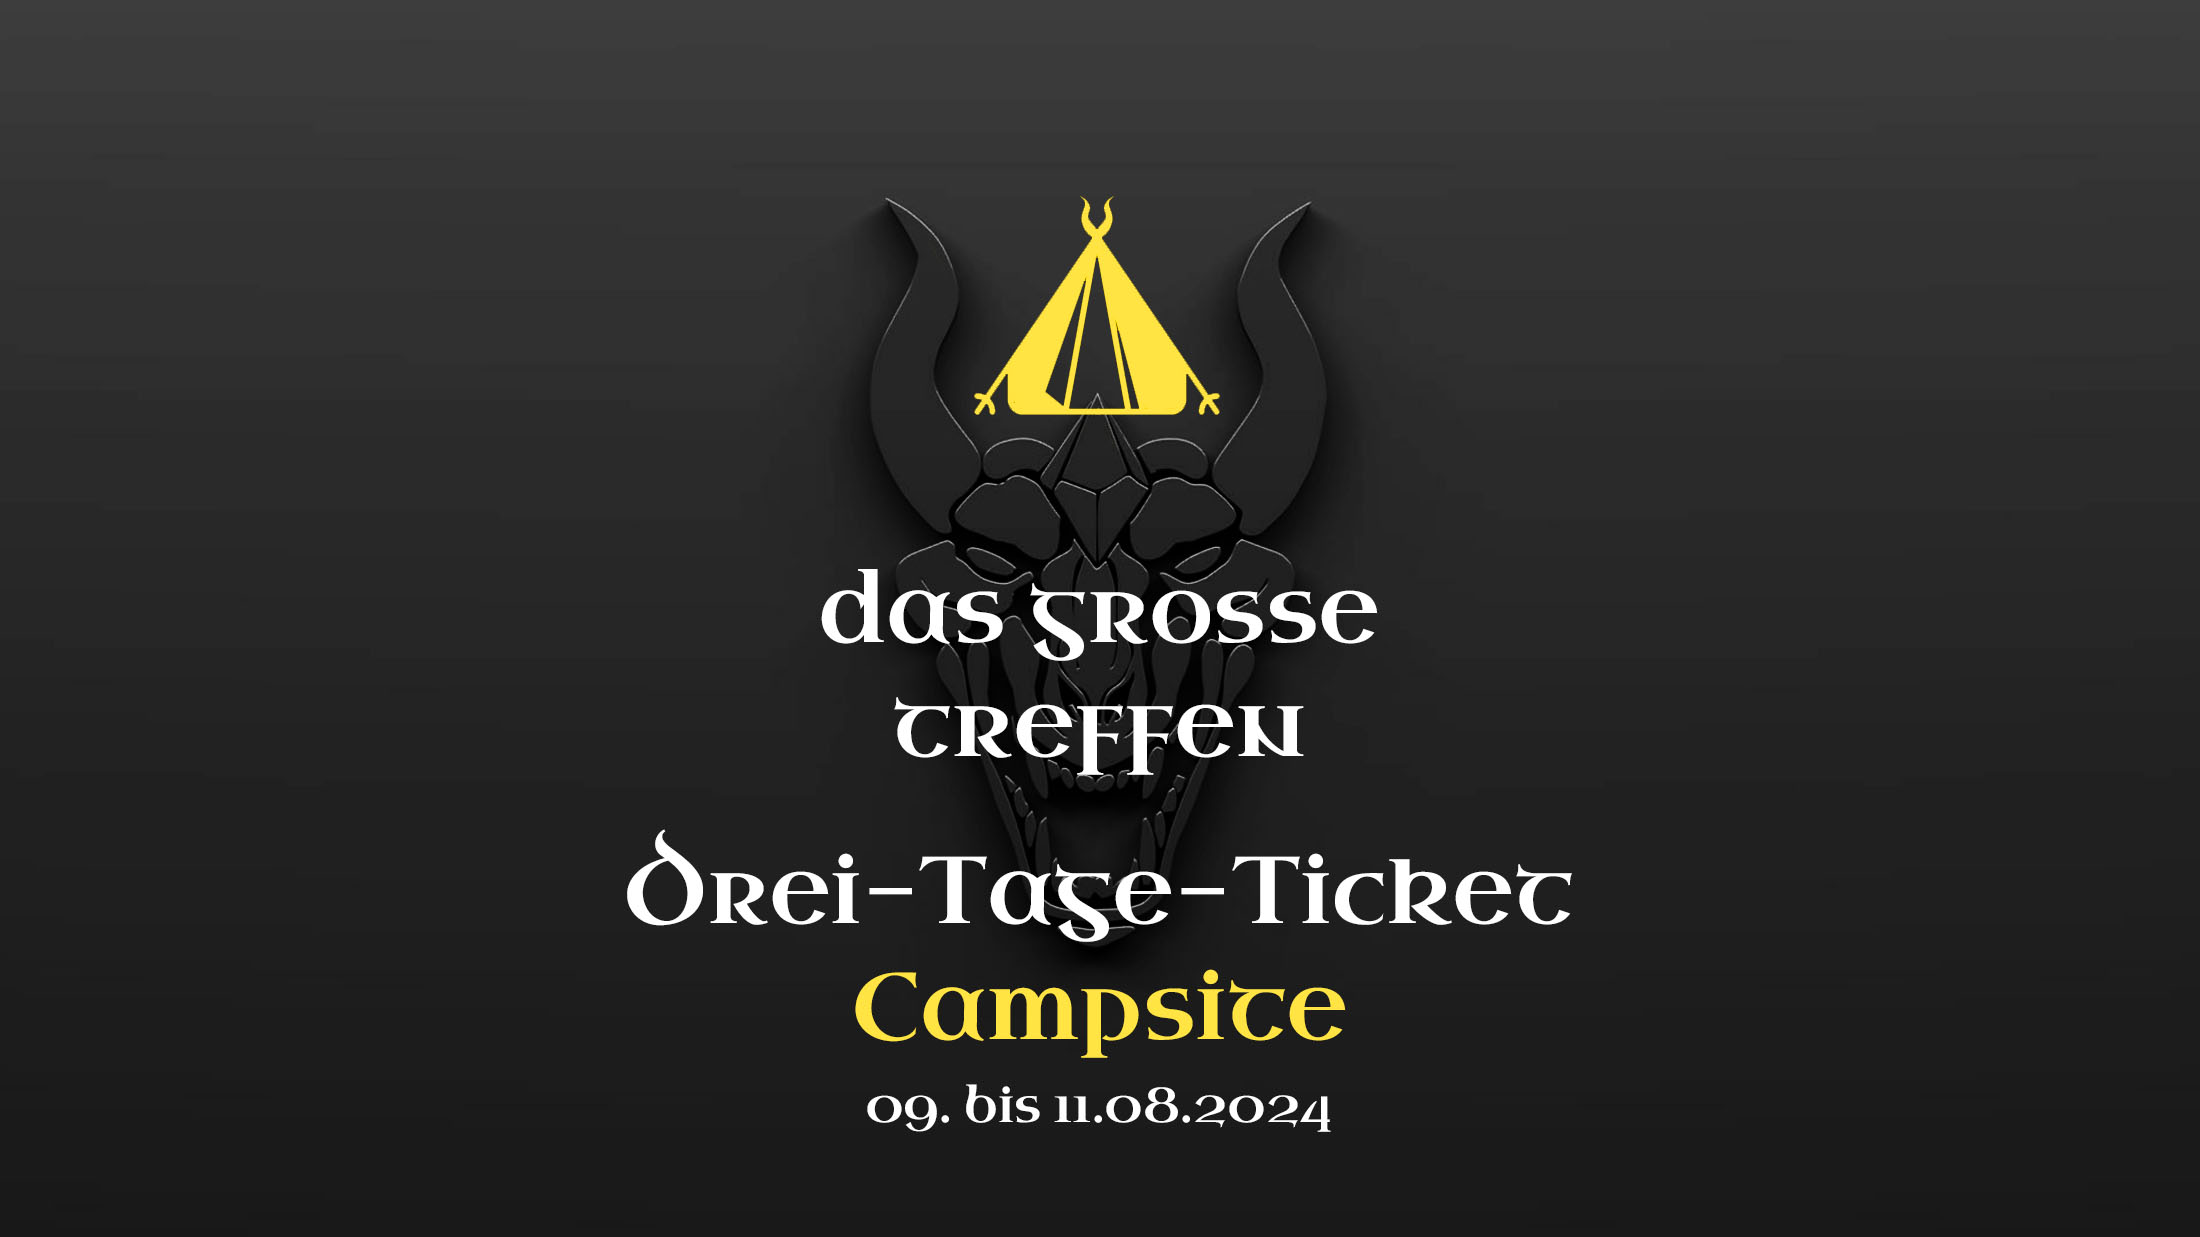 Das Grosse Treffen - 3-Tage-Ticket mit Campsite 09.-11.08.2024 - Das Fantasy Festival Mittelalter, Gothic, Steampunk, Endzeit, Fantasy & LARP in Aach am Bodensee Deutschland